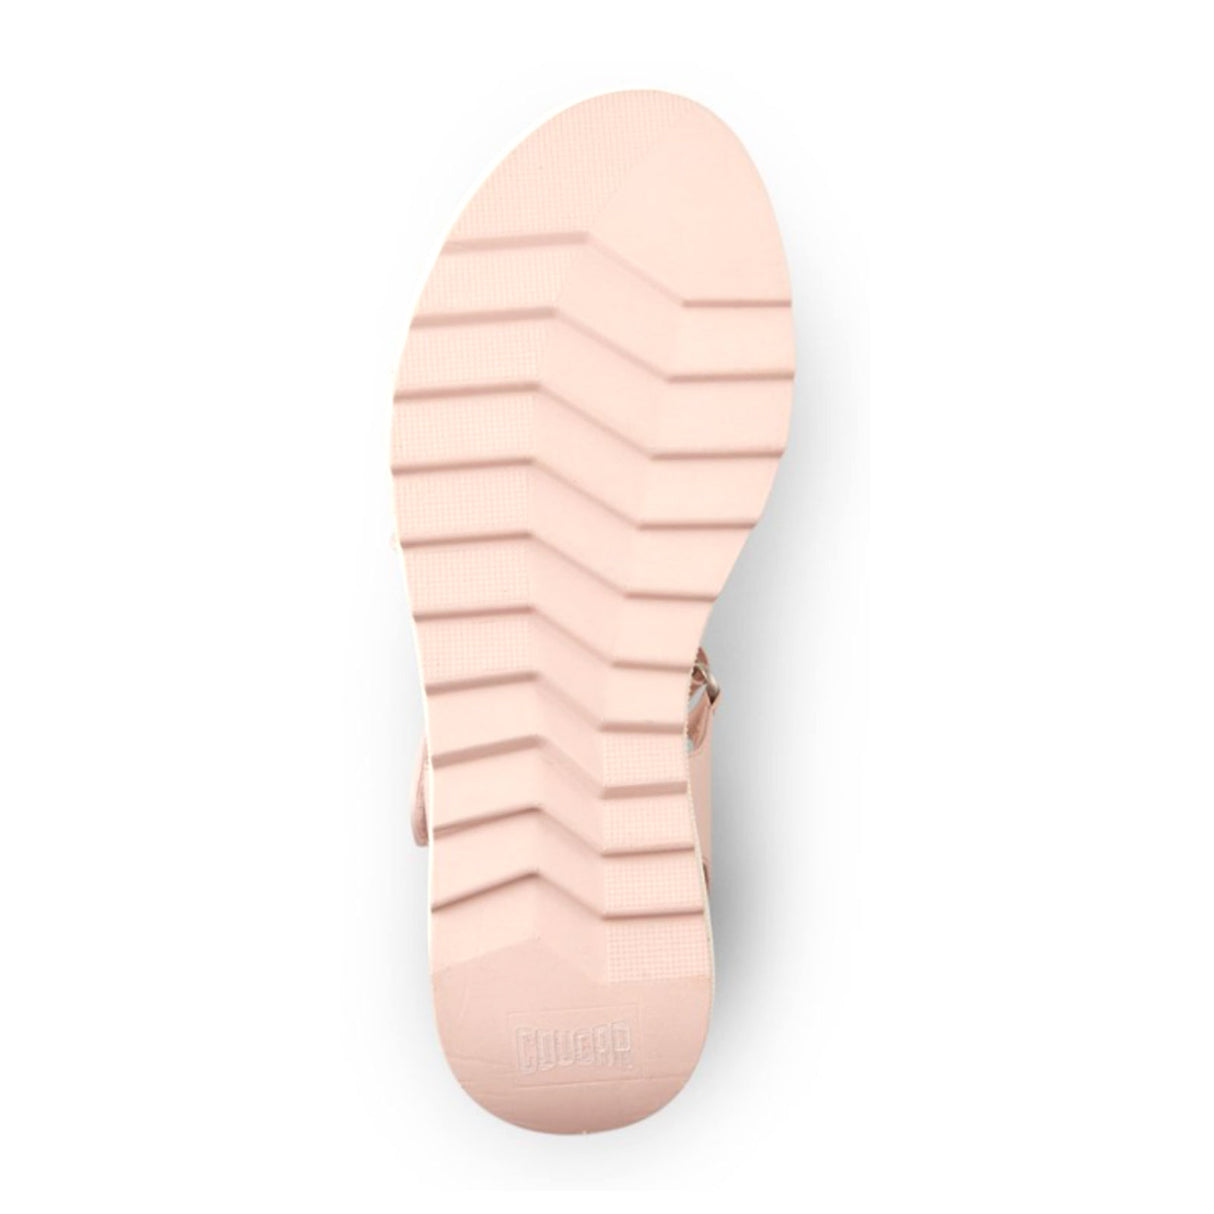 Cougar Hibiscus (Women) - Shell Sandals - Heel/Wedge - The Heel Shoe Fitters